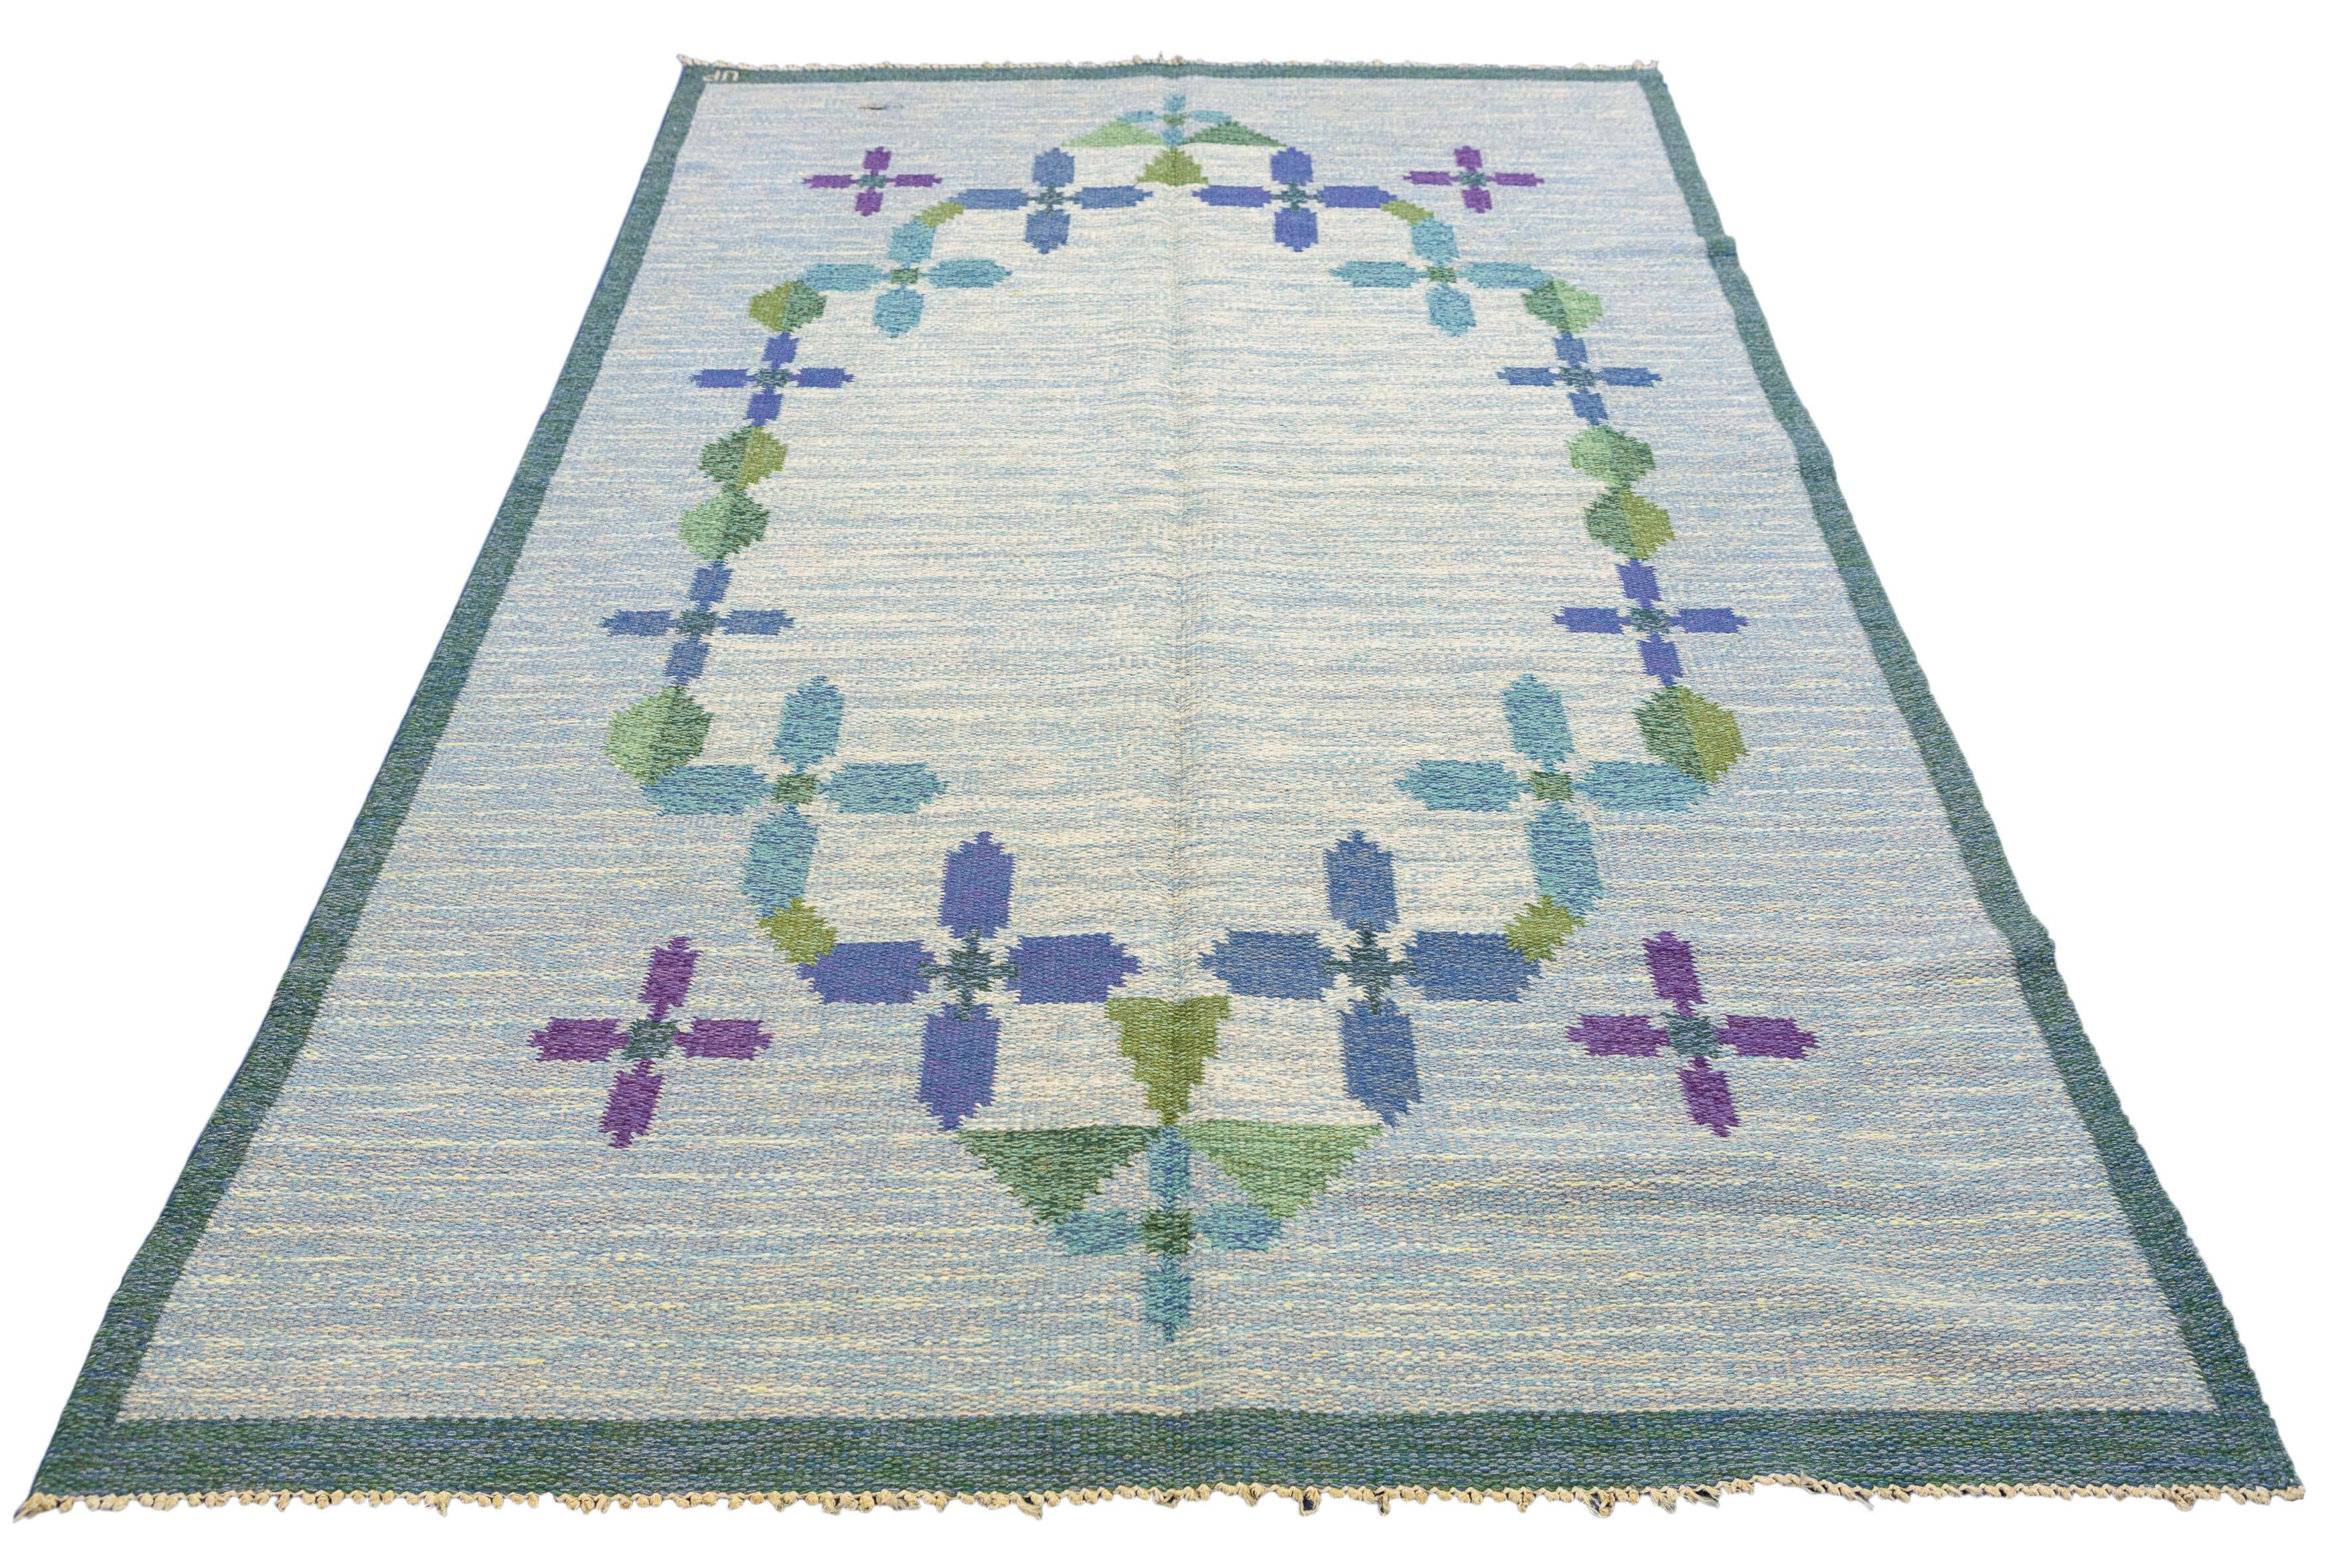 Dies ist ein wirklich einzigartiger Rollakan-Schwedenteppich mit einer weichen und beruhigenden Hintergrundfarbe, die mit einer fesselnden Kombination aus Grün-, Lila- und Blautönen verziert ist. Dieses bemerkenswerte Stück ist ein Beispiel für die